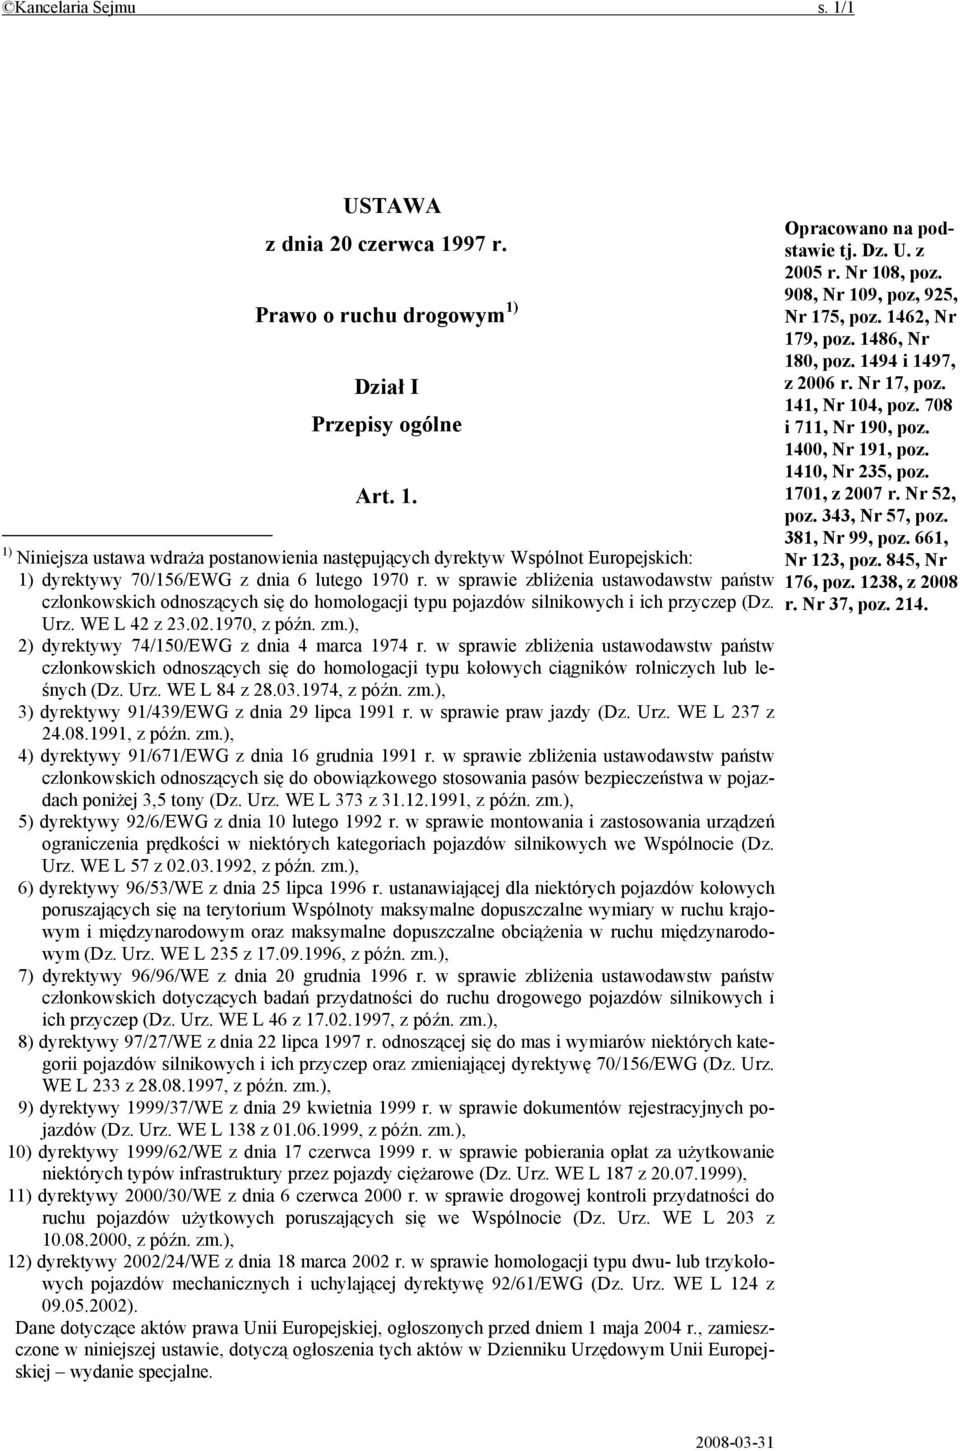 ), 2) dyrektywy 74/150/EWG z dnia 4 marca 1974 r. w sprawie zbliżenia ustawodawstw państw członkowskich odnoszących się do homologacji typu kołowych ciągników rolniczych lub leśnych (Dz. Urz.